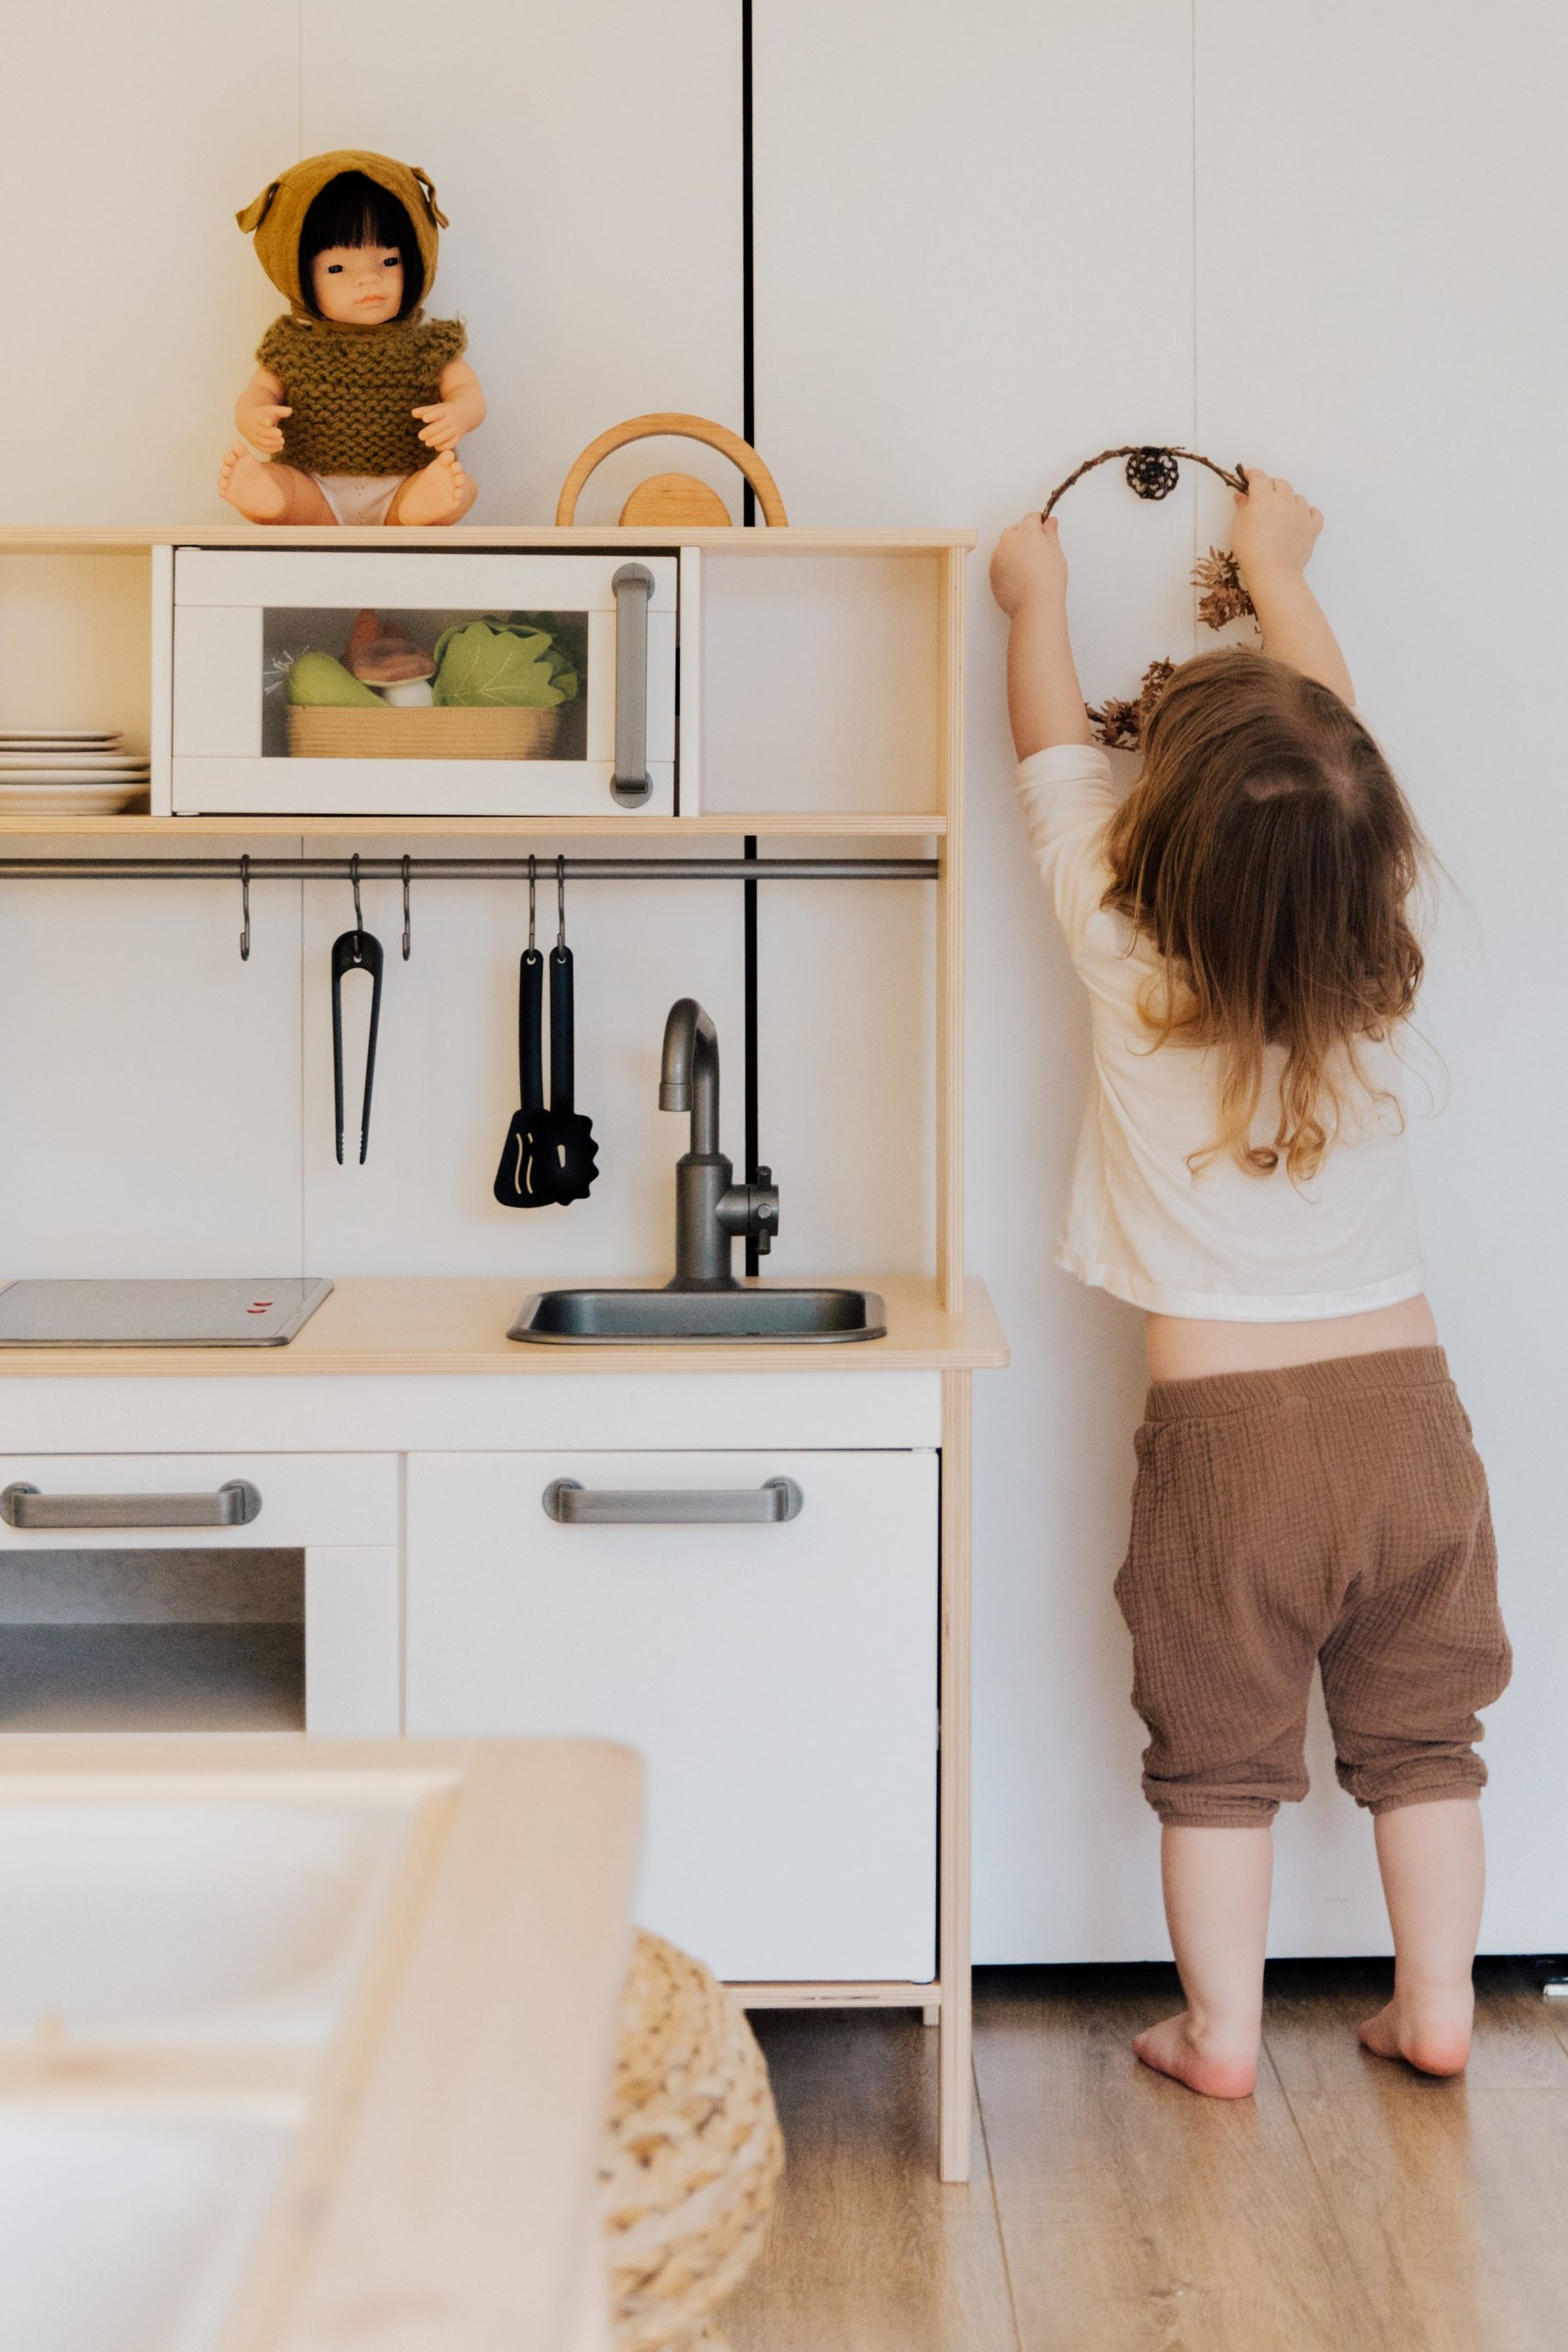 “No quiero ser niña, quiero ser chef": Niño se viraliza por pedir cocina de juguete